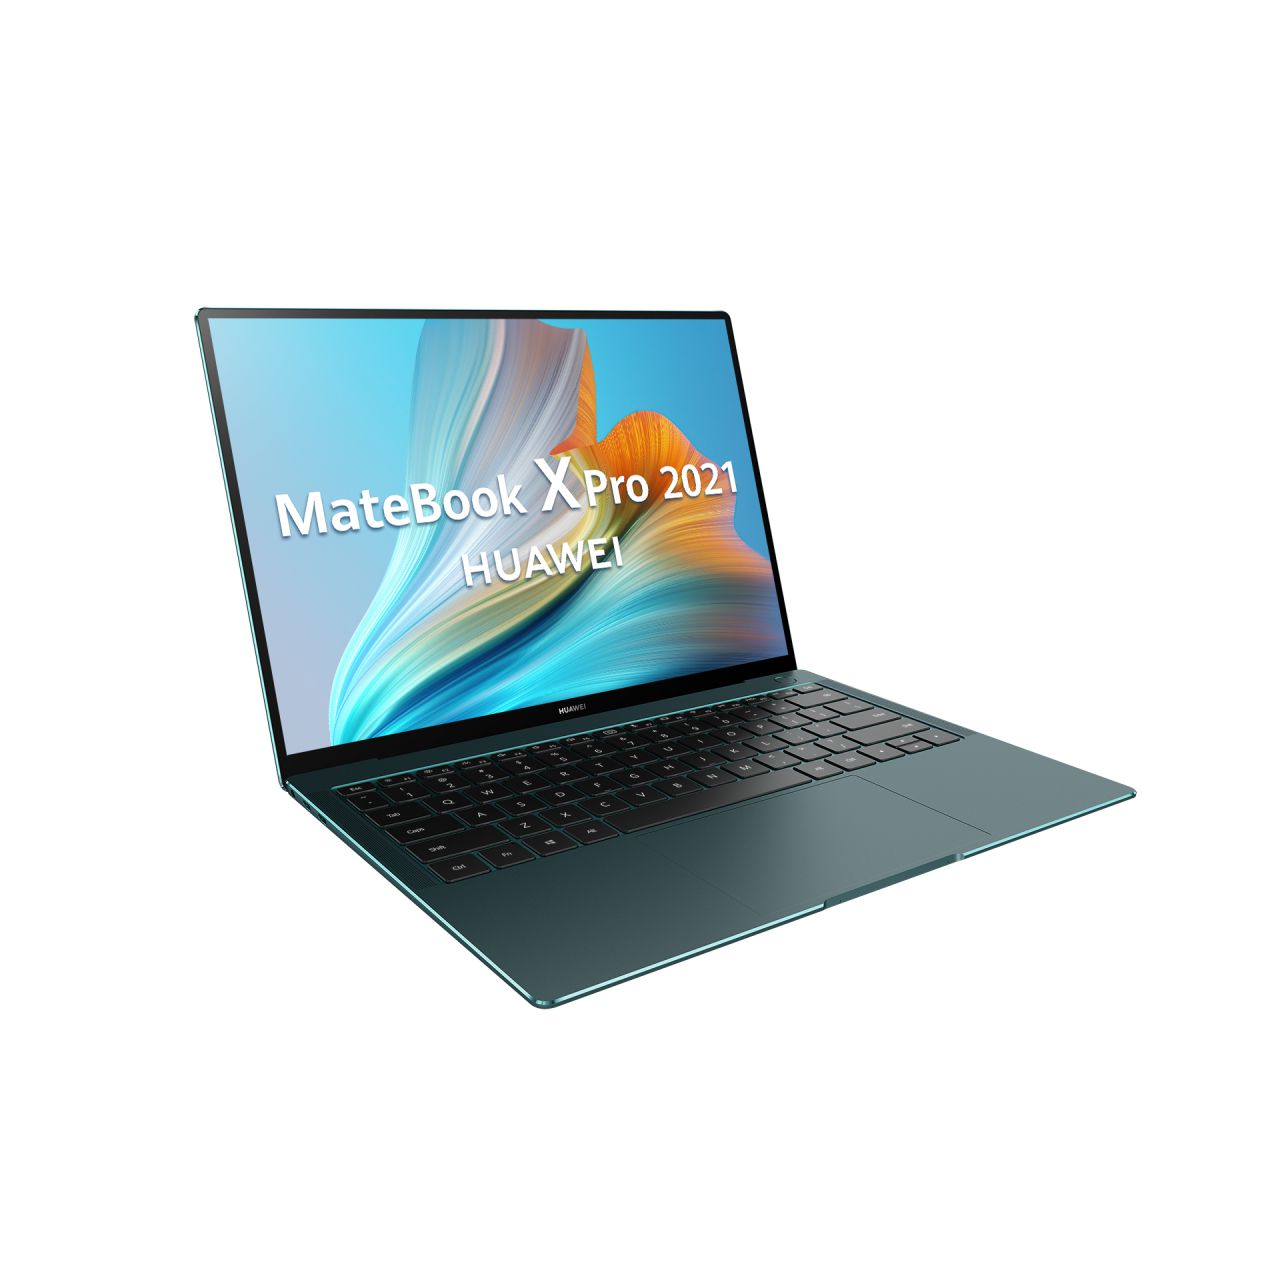 MateBook X Pro 2021 Emerald Green